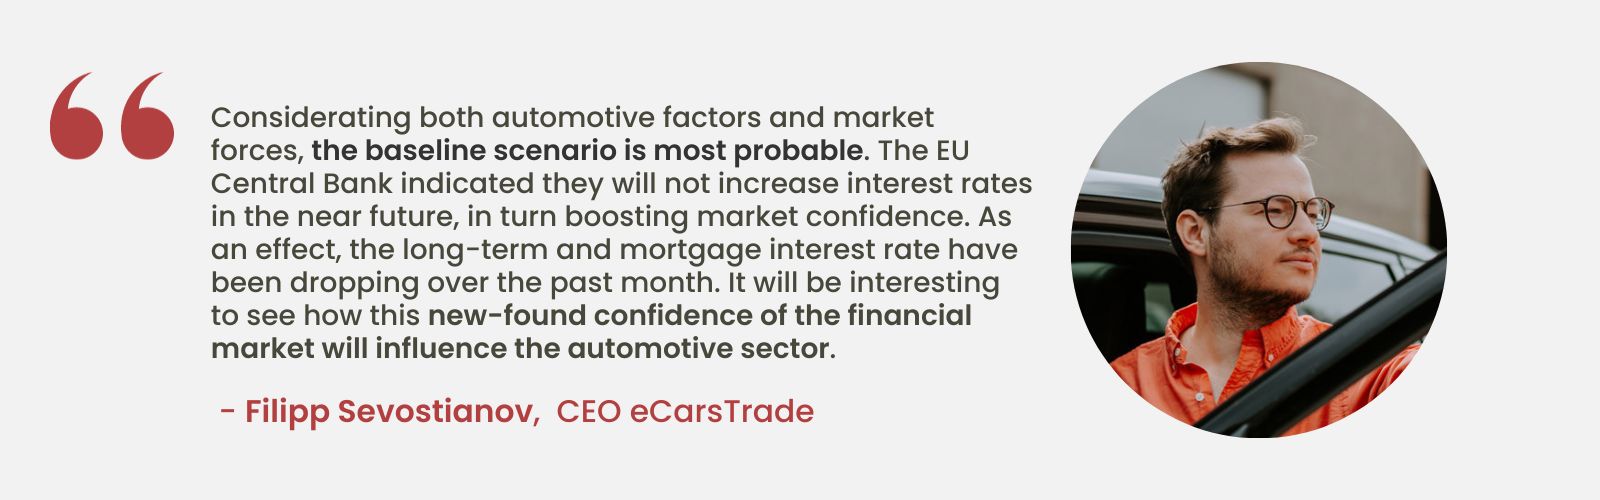 Expertenanalyse von Filipp Sevostianov, CEO von eCarsTrade, über die Auswirkungen stabiler EU-Zinssätze auf das Marktvertrauen und die möglichen Auswirkungen auf die Automobilindustrie.